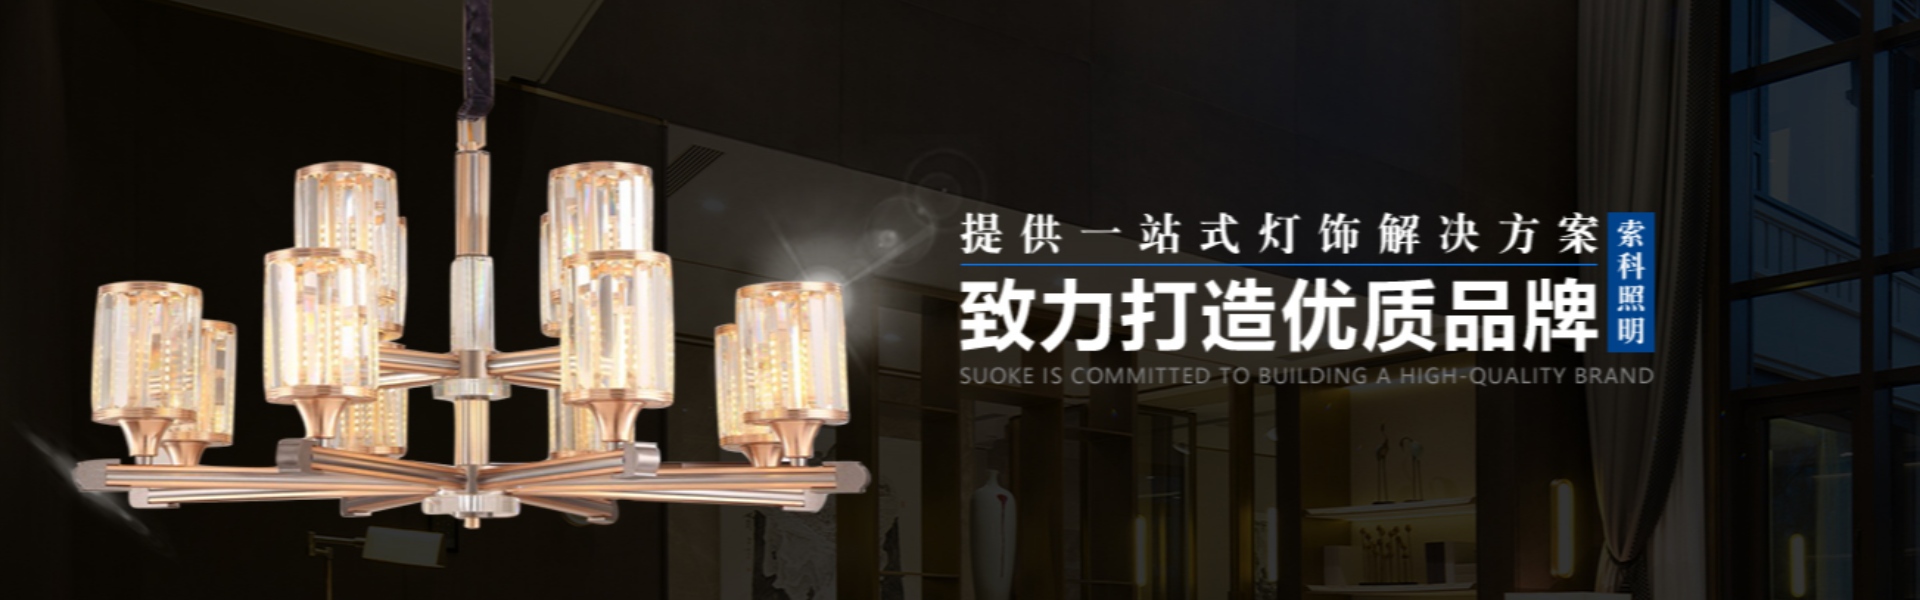 домашнее освещение, внешнее освещение, солнечное освещение,Zhongshan Suoke Lighting Electric Co., Ltd.